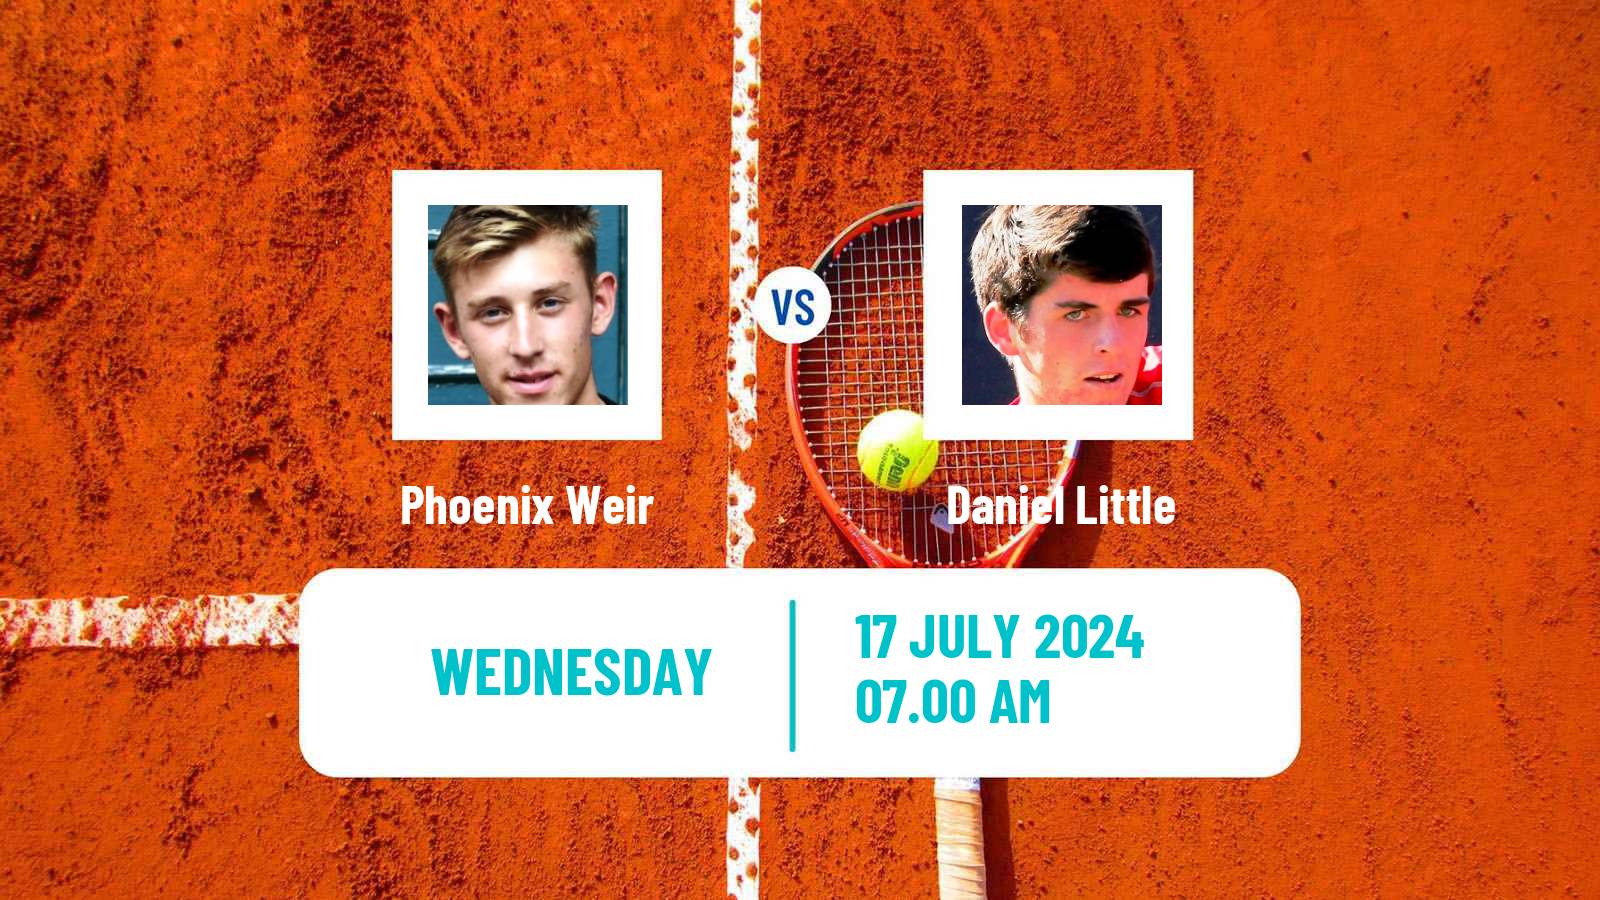 Tennis ITF M25 Nottingham 4 Men Phoenix Weir - Daniel Little